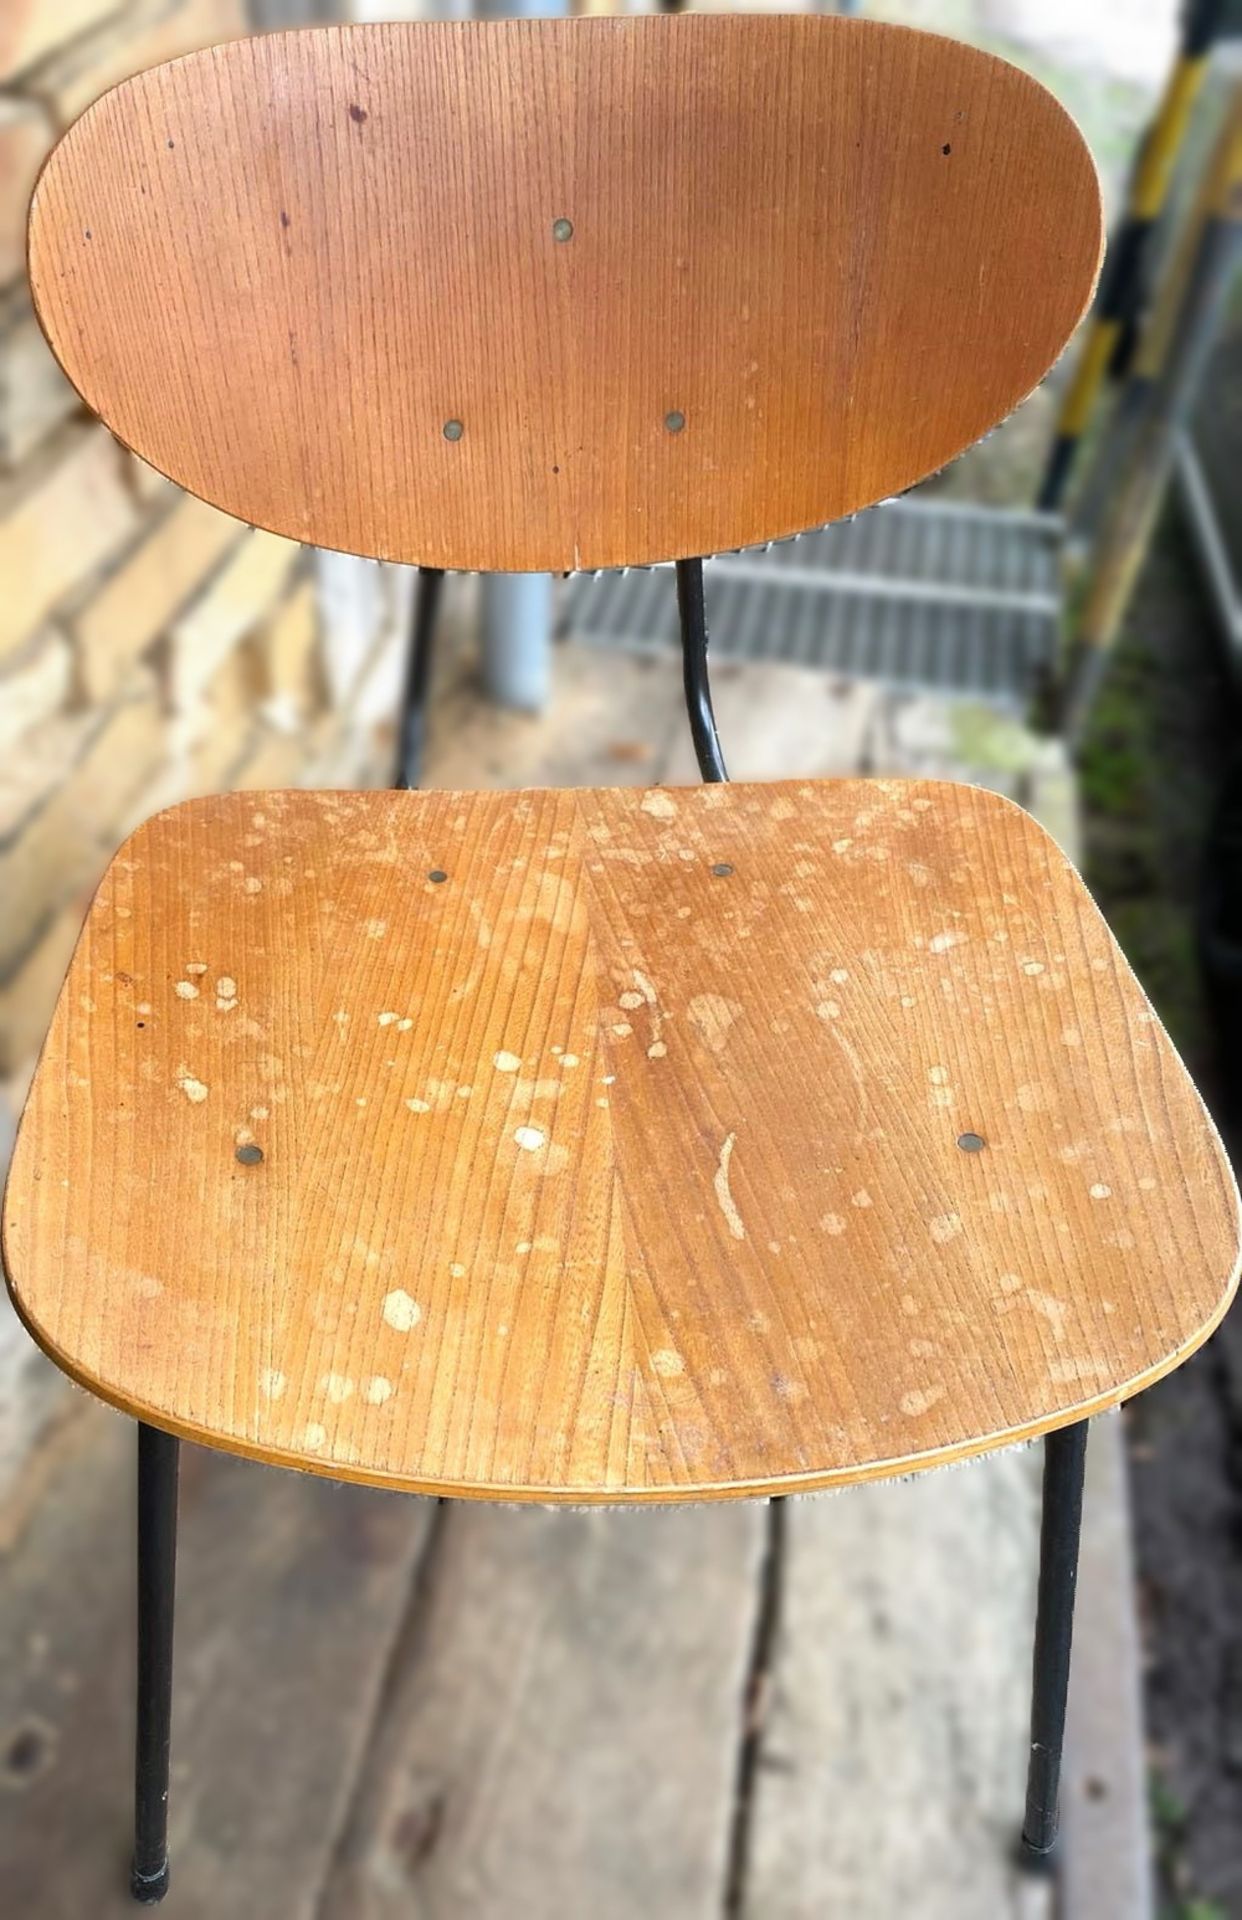 Knoll International Stuhl, Stahlrohr mit Holzauflage, auf der Sitzfläche unten Reste von Aufkleber